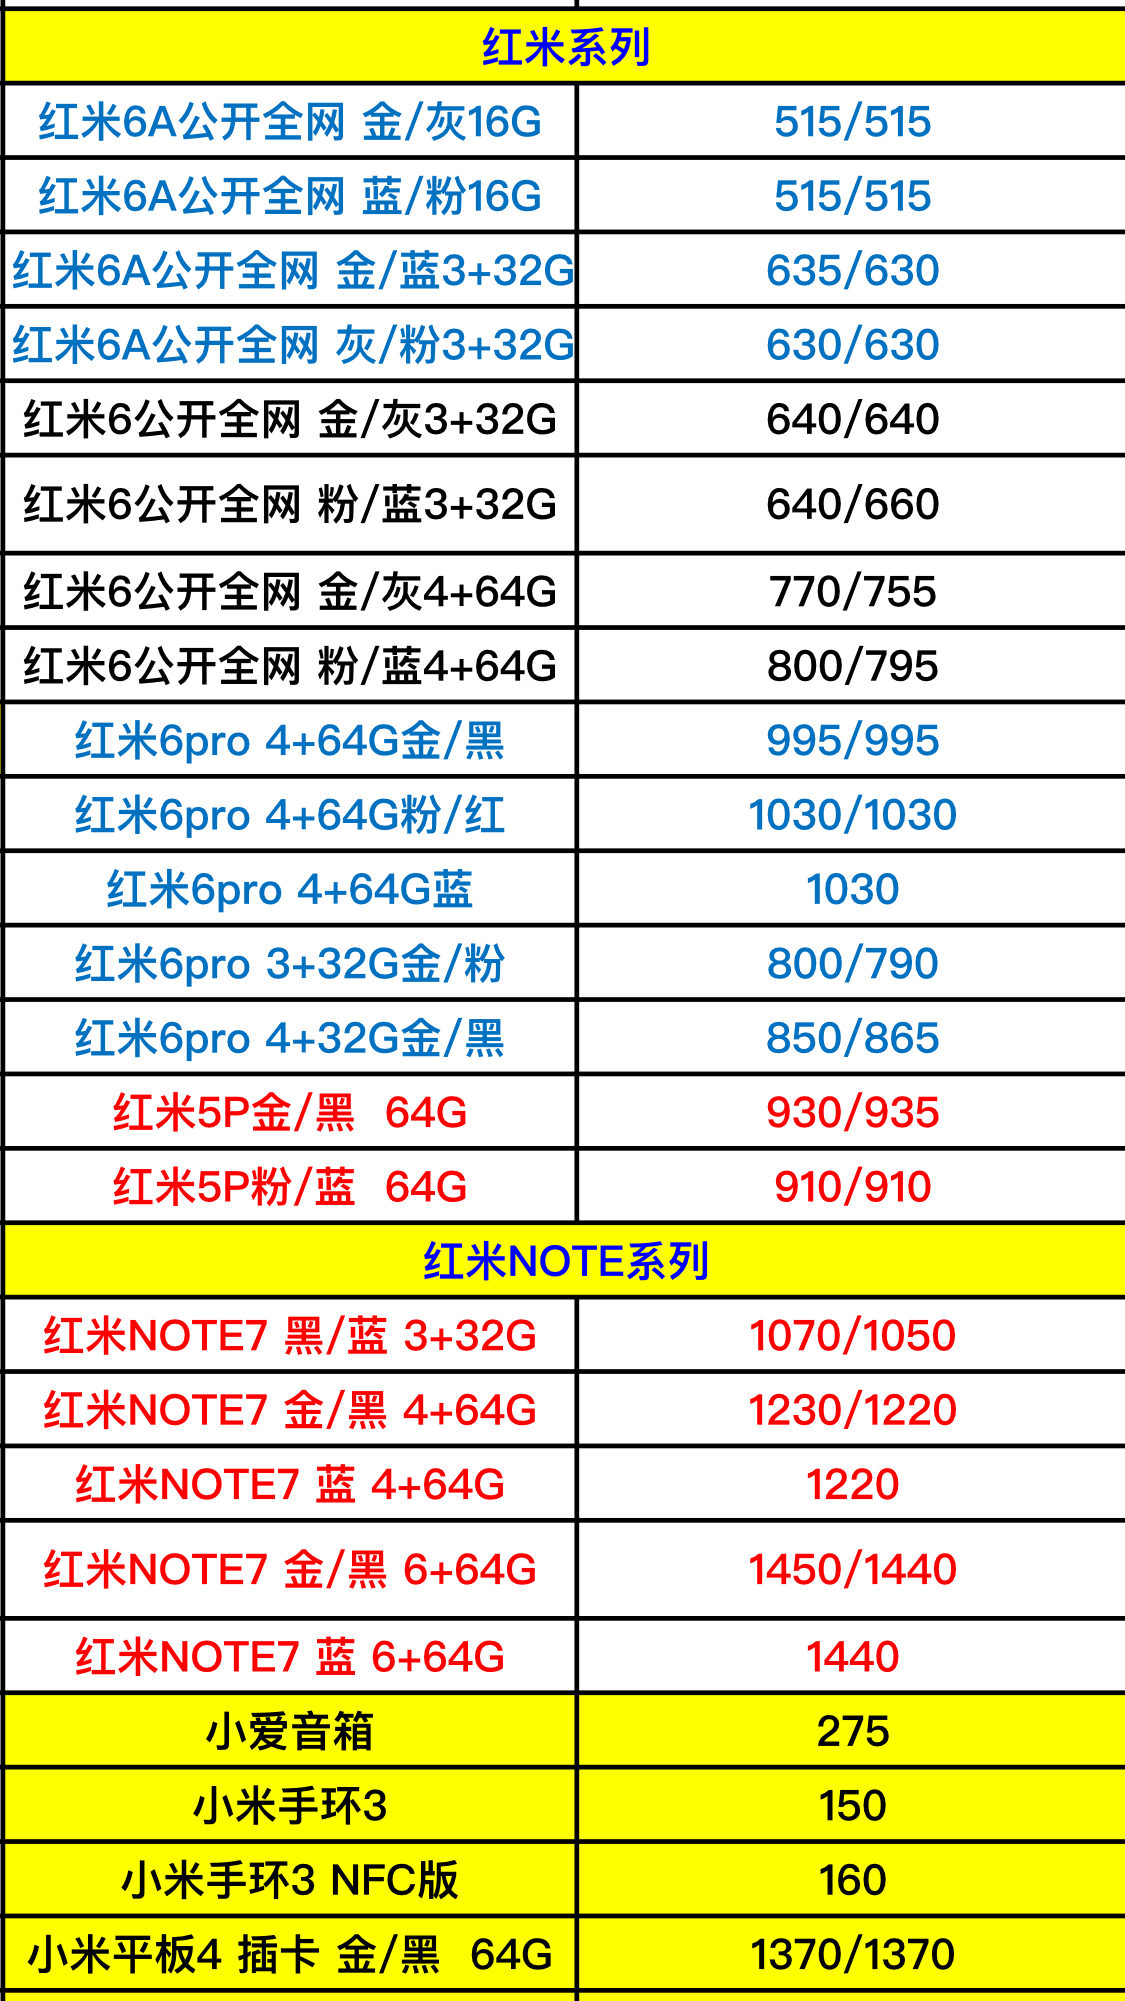 最新小米和三星全系列手机进货价格表曝光,看看你有没有买贵!